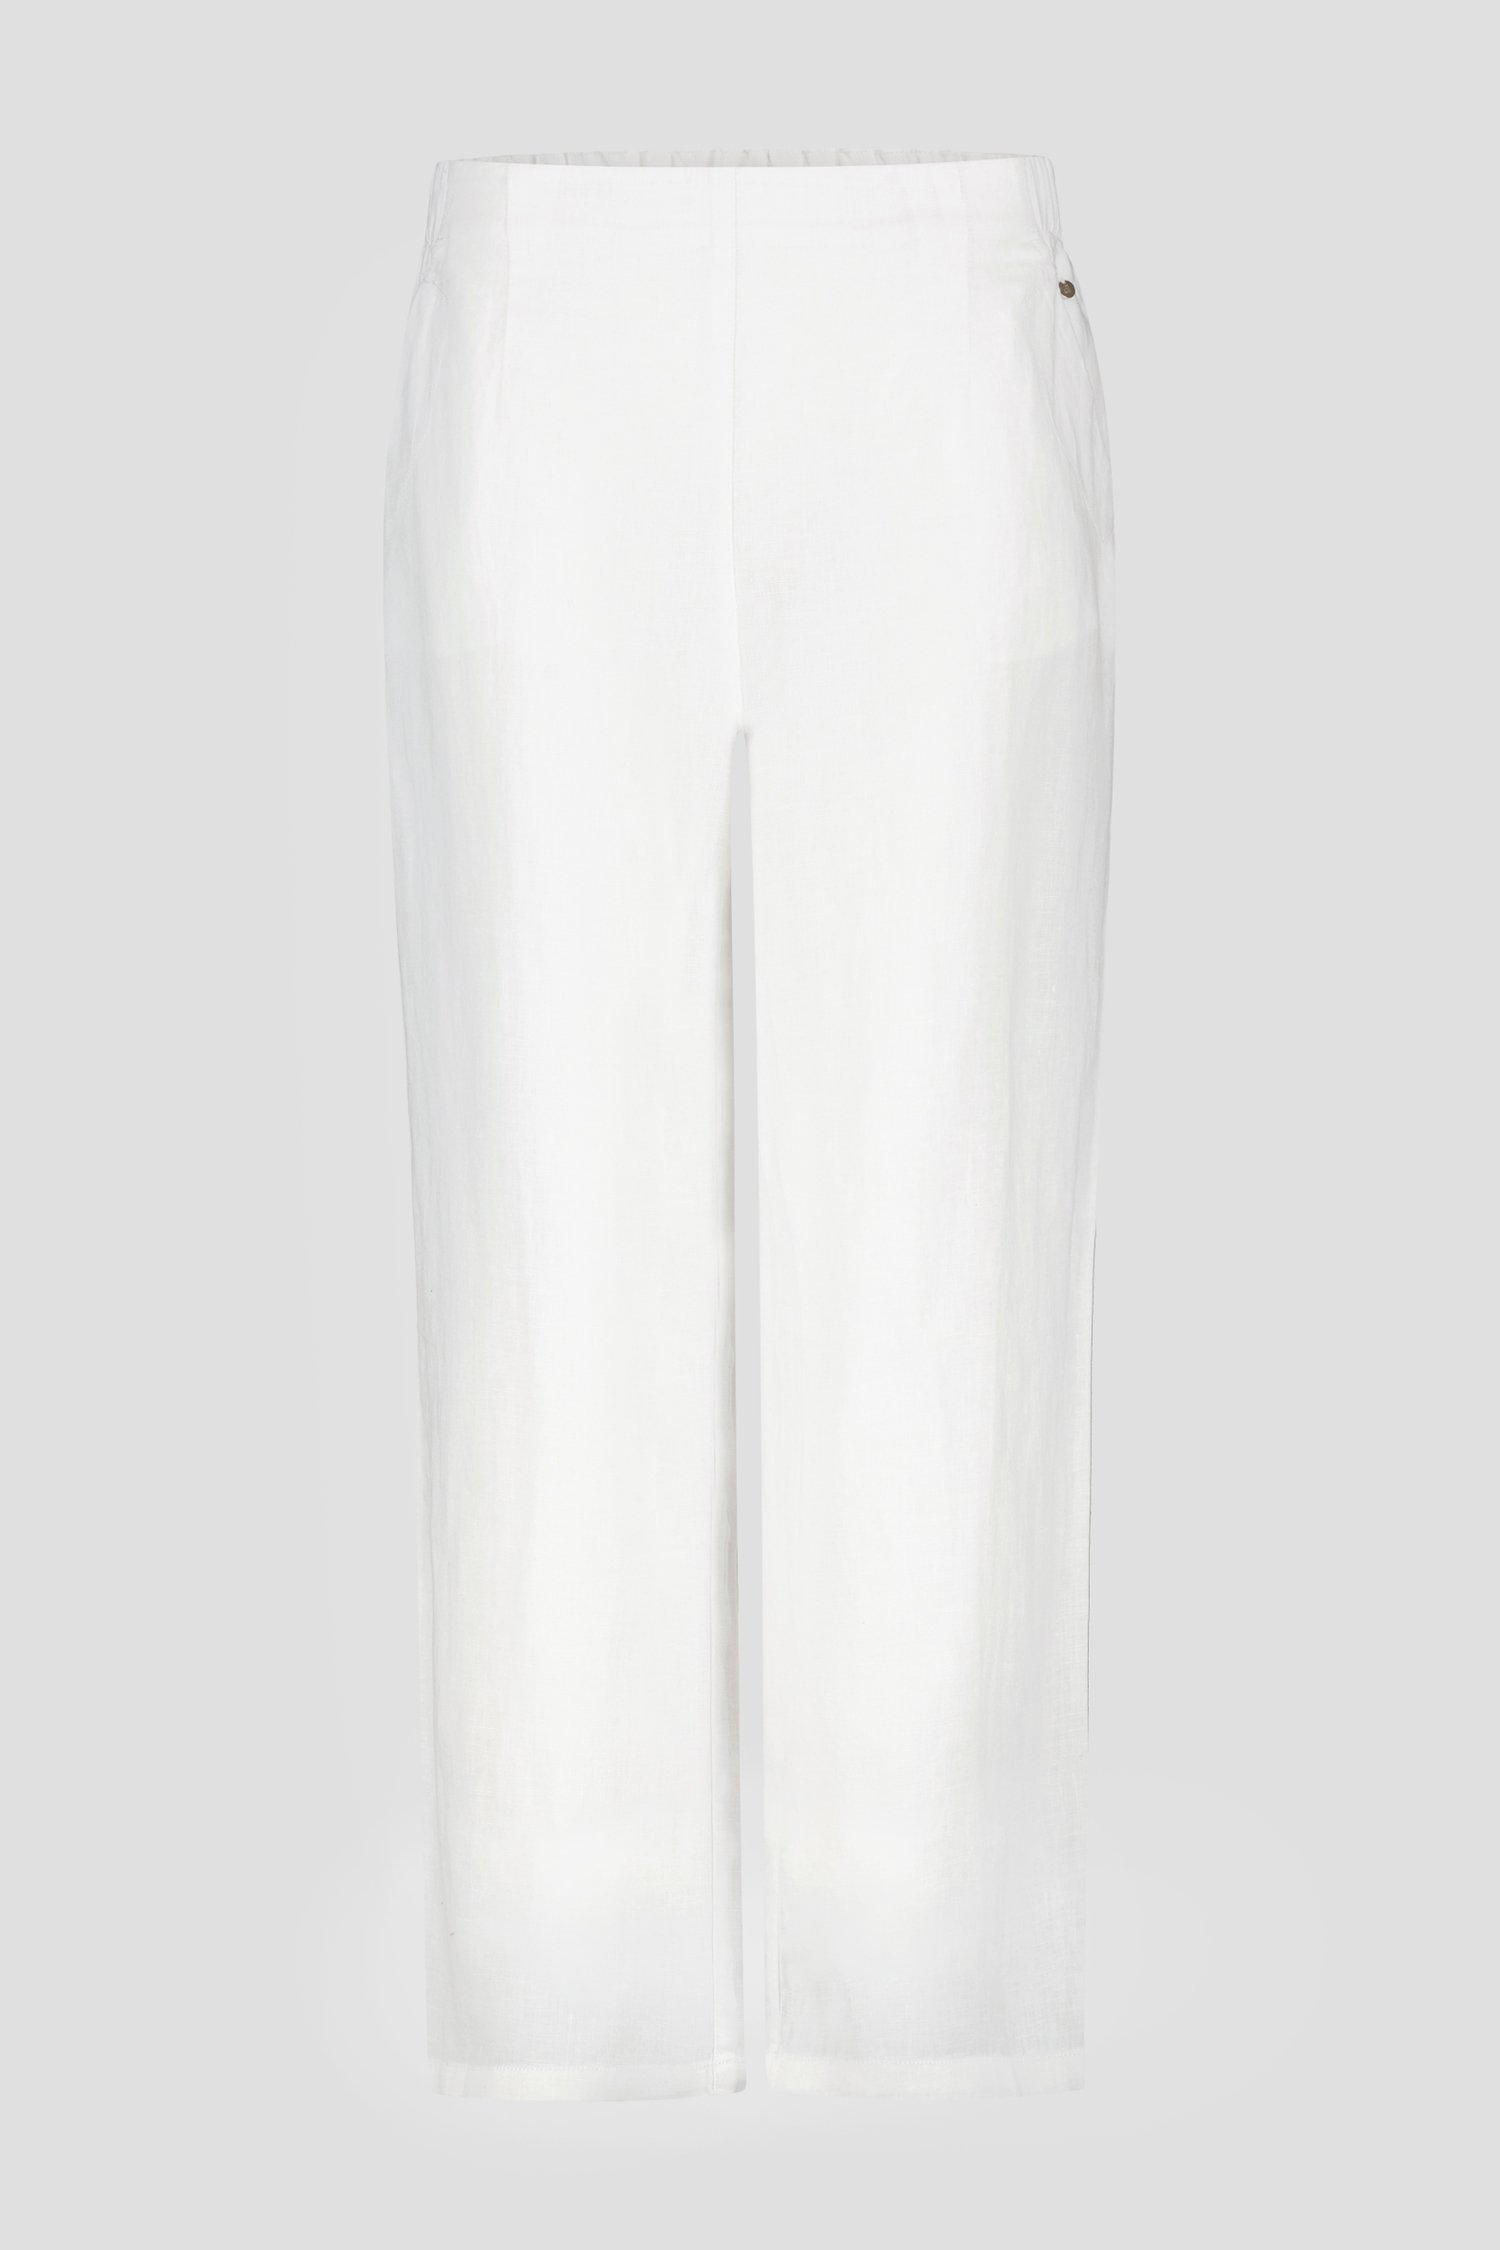 Gering Een zekere diepvries Witte linnen broek van Diane Laury | 9805080 | e5